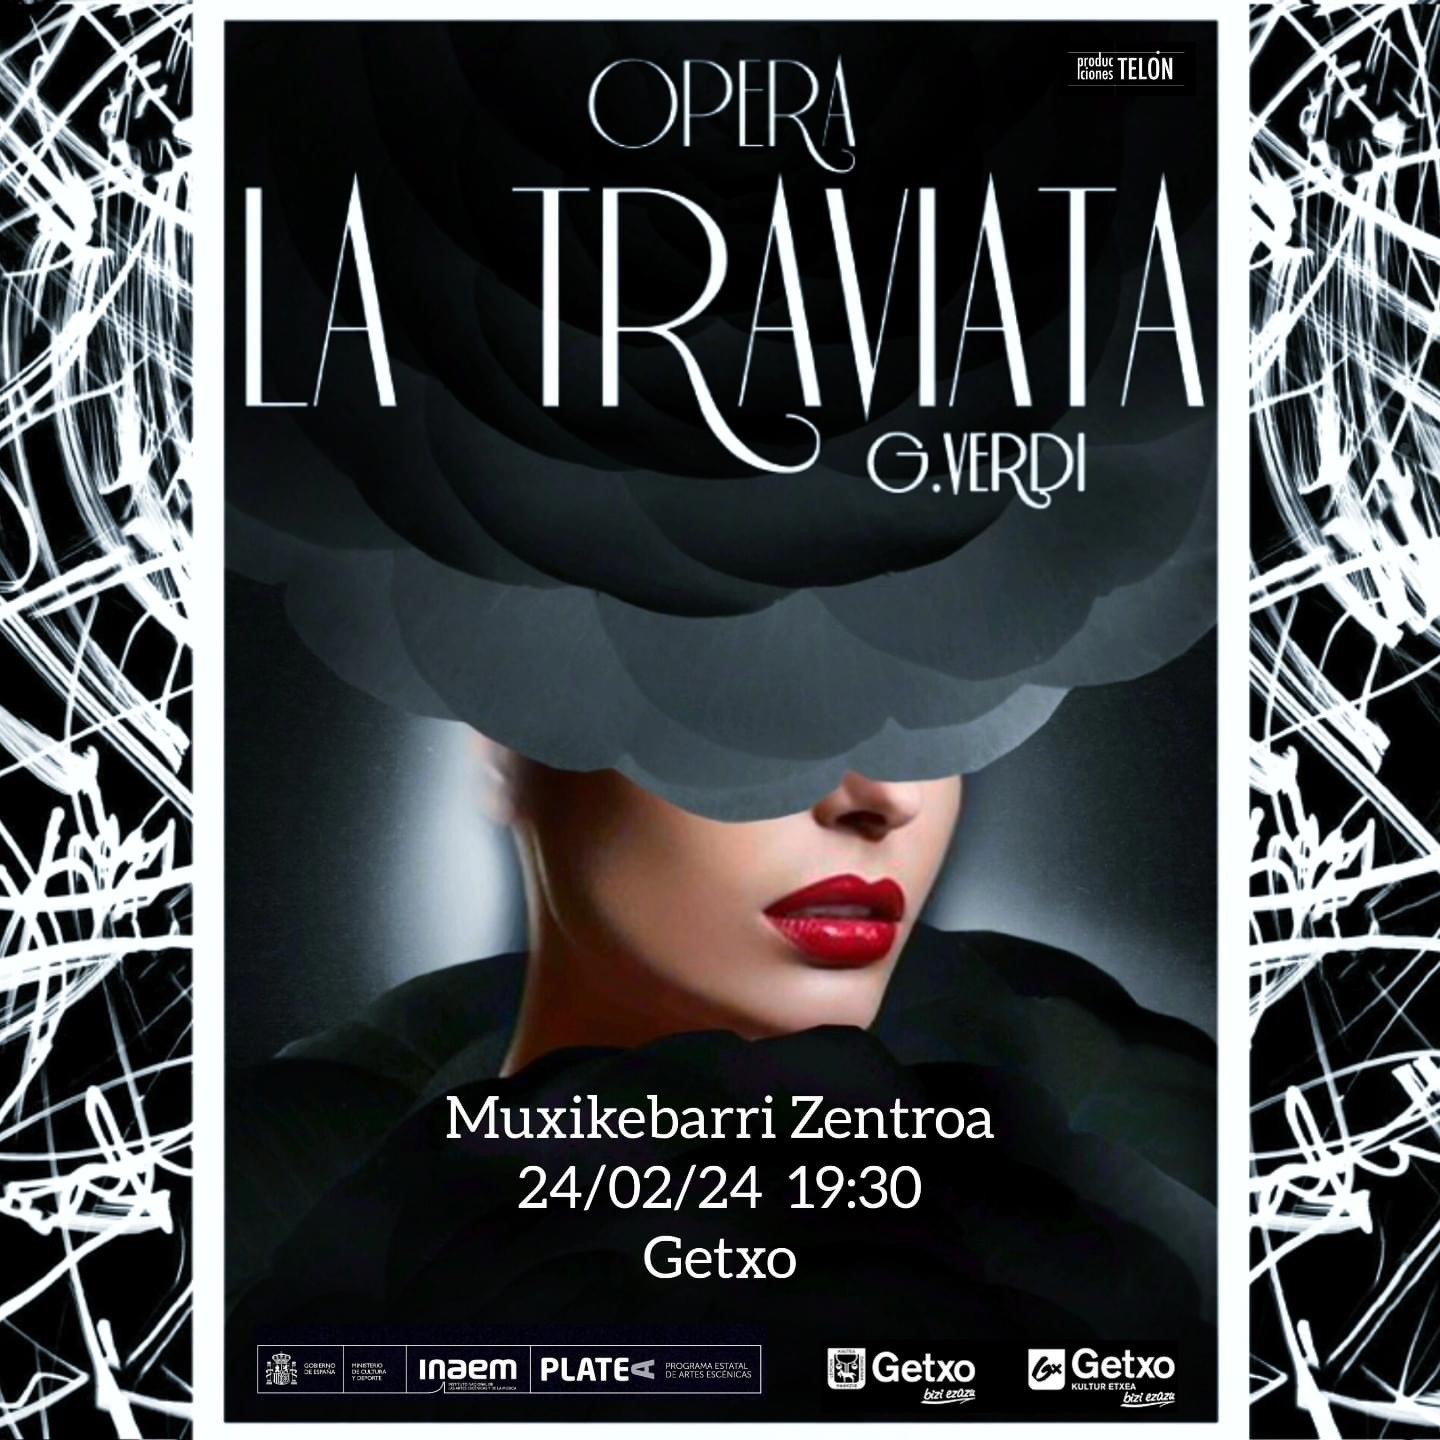 AMAO y la Ópera Traviata en Getxo